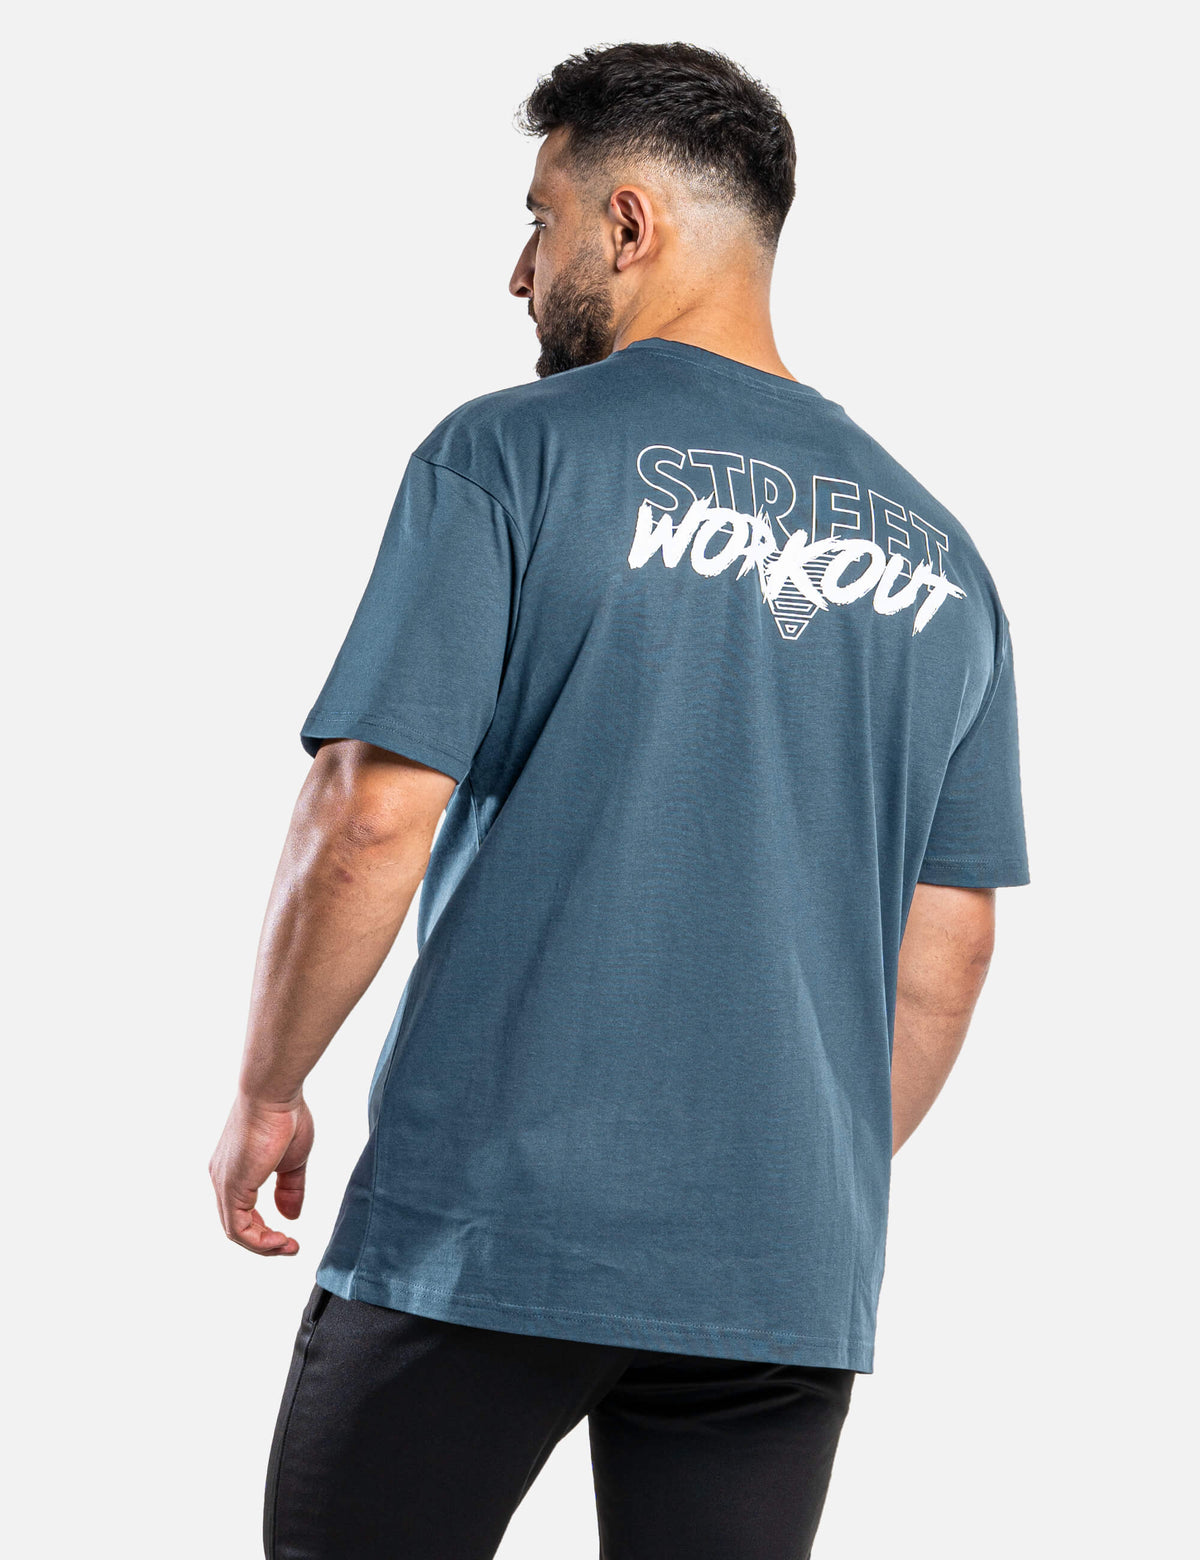 Street Workout Oversized Shirt Men